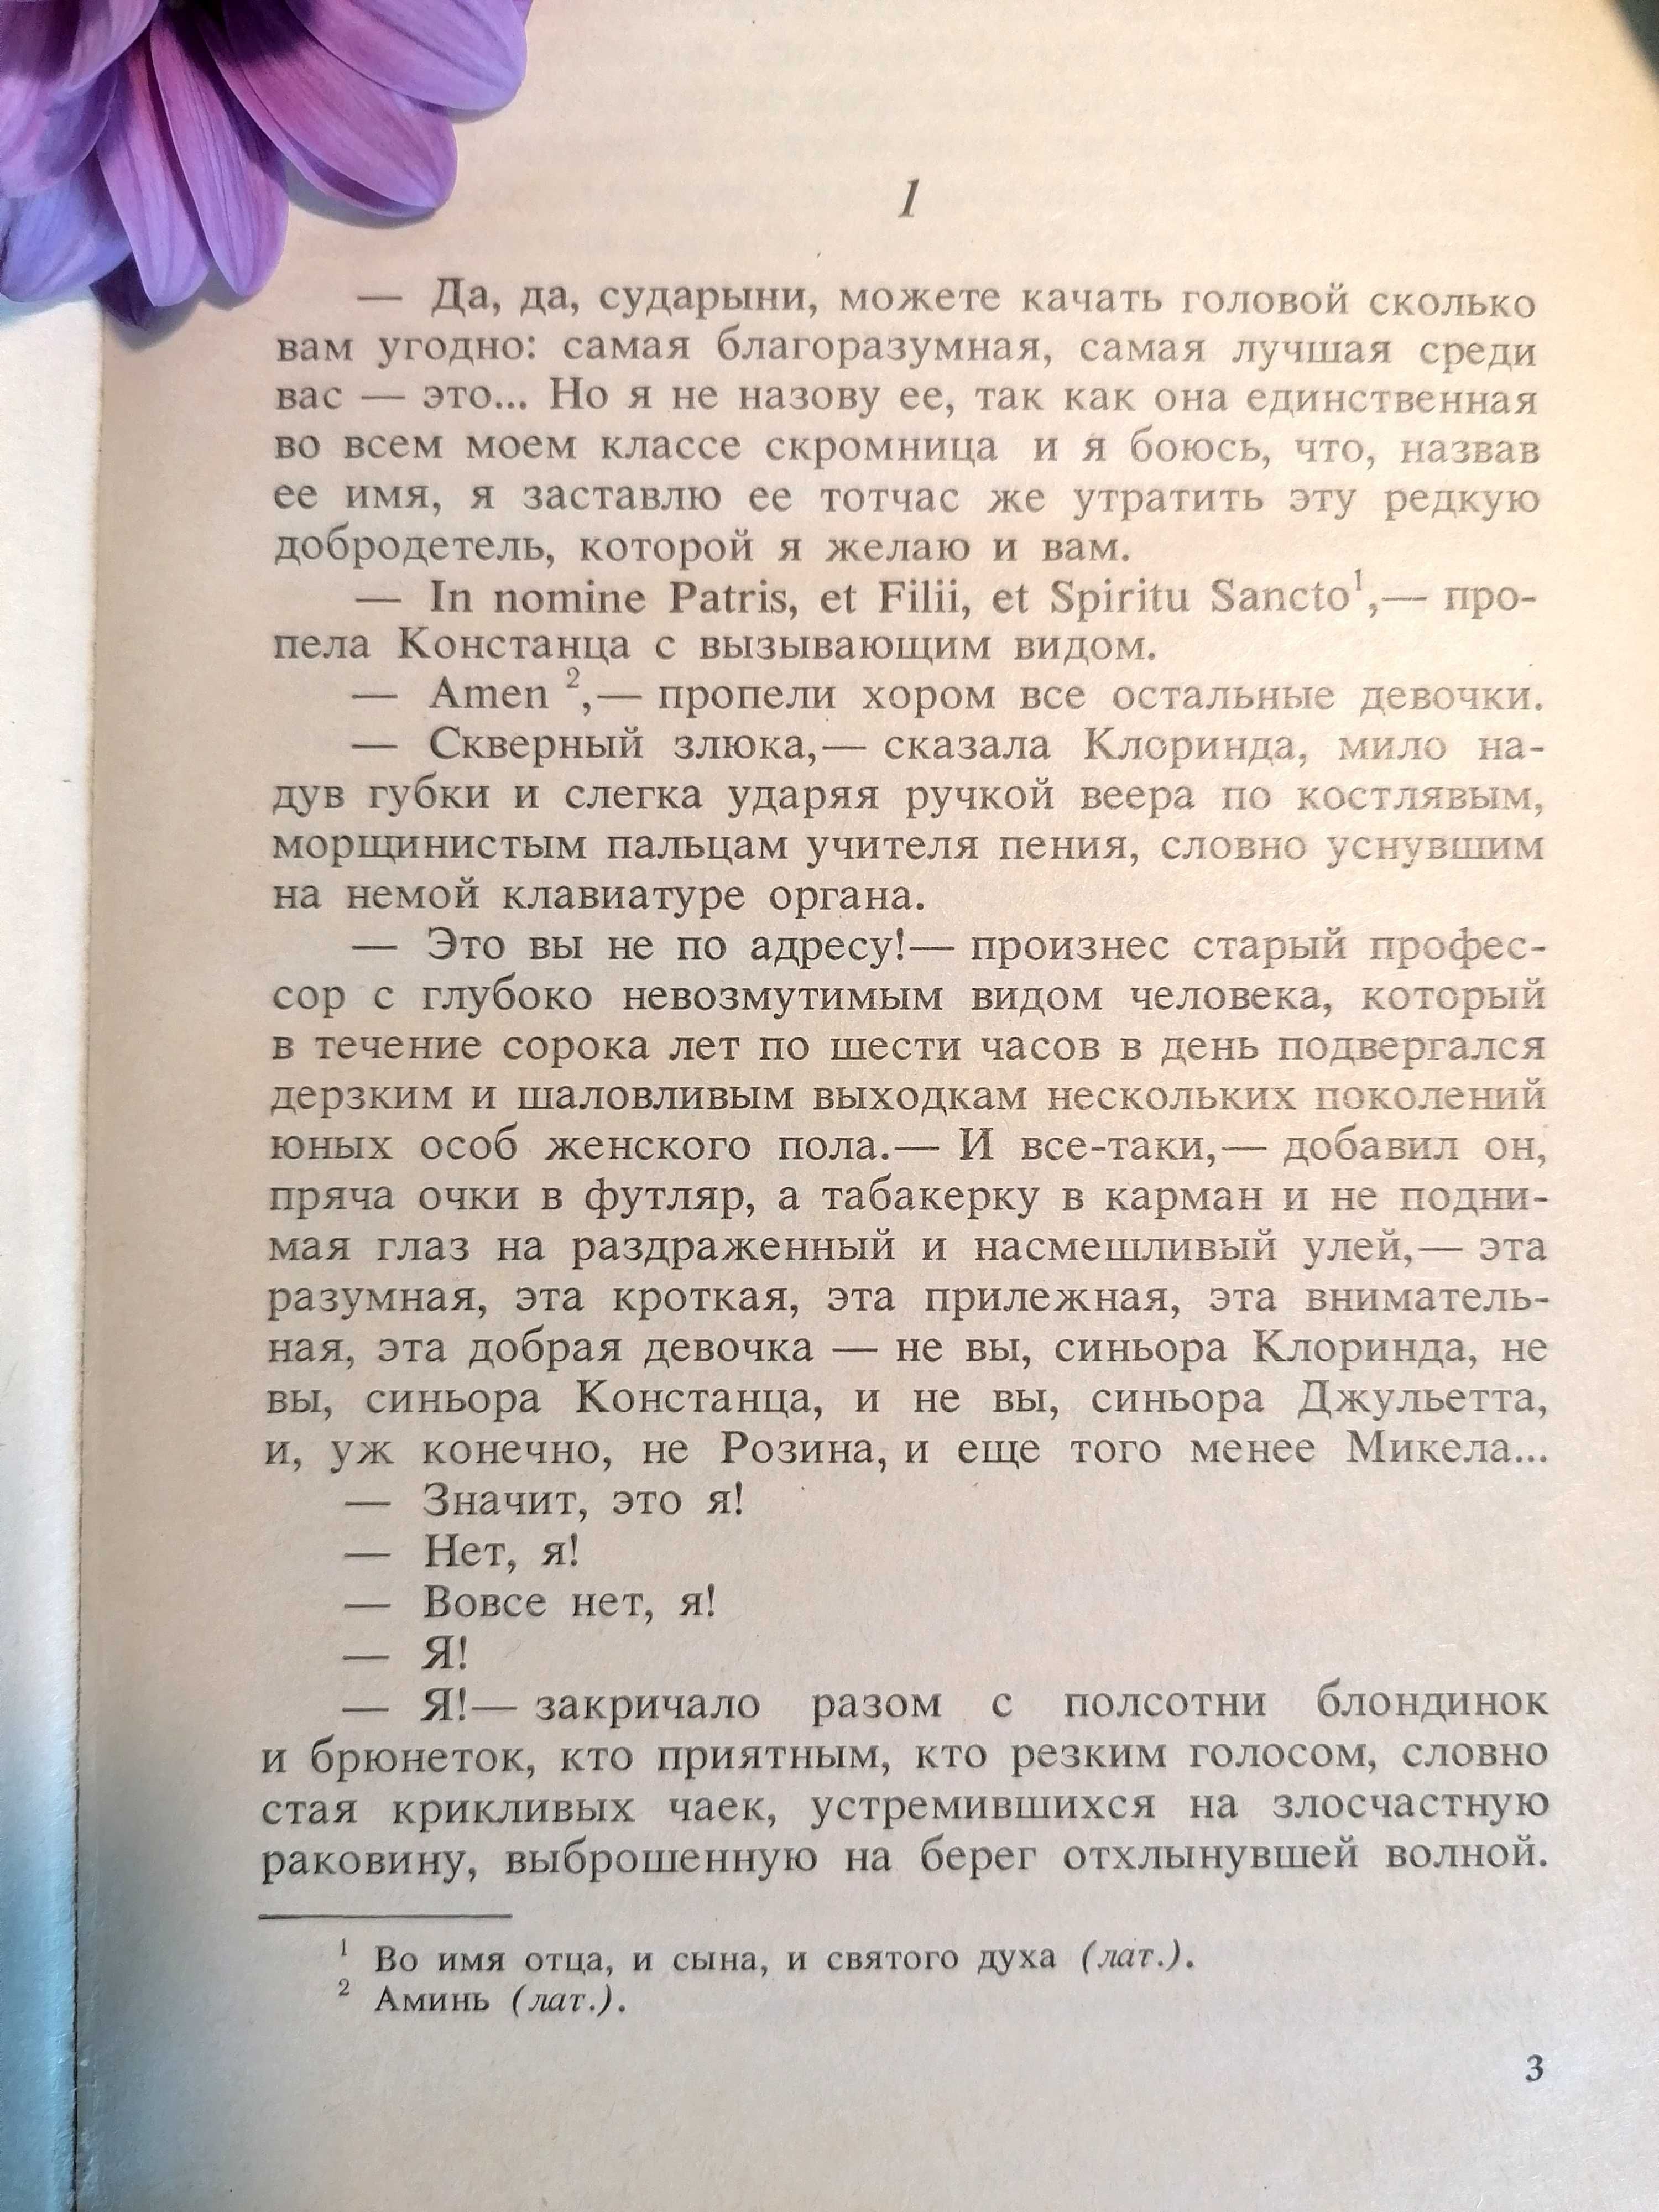 Роман "Консуело" в двох томах, Жорж Санд